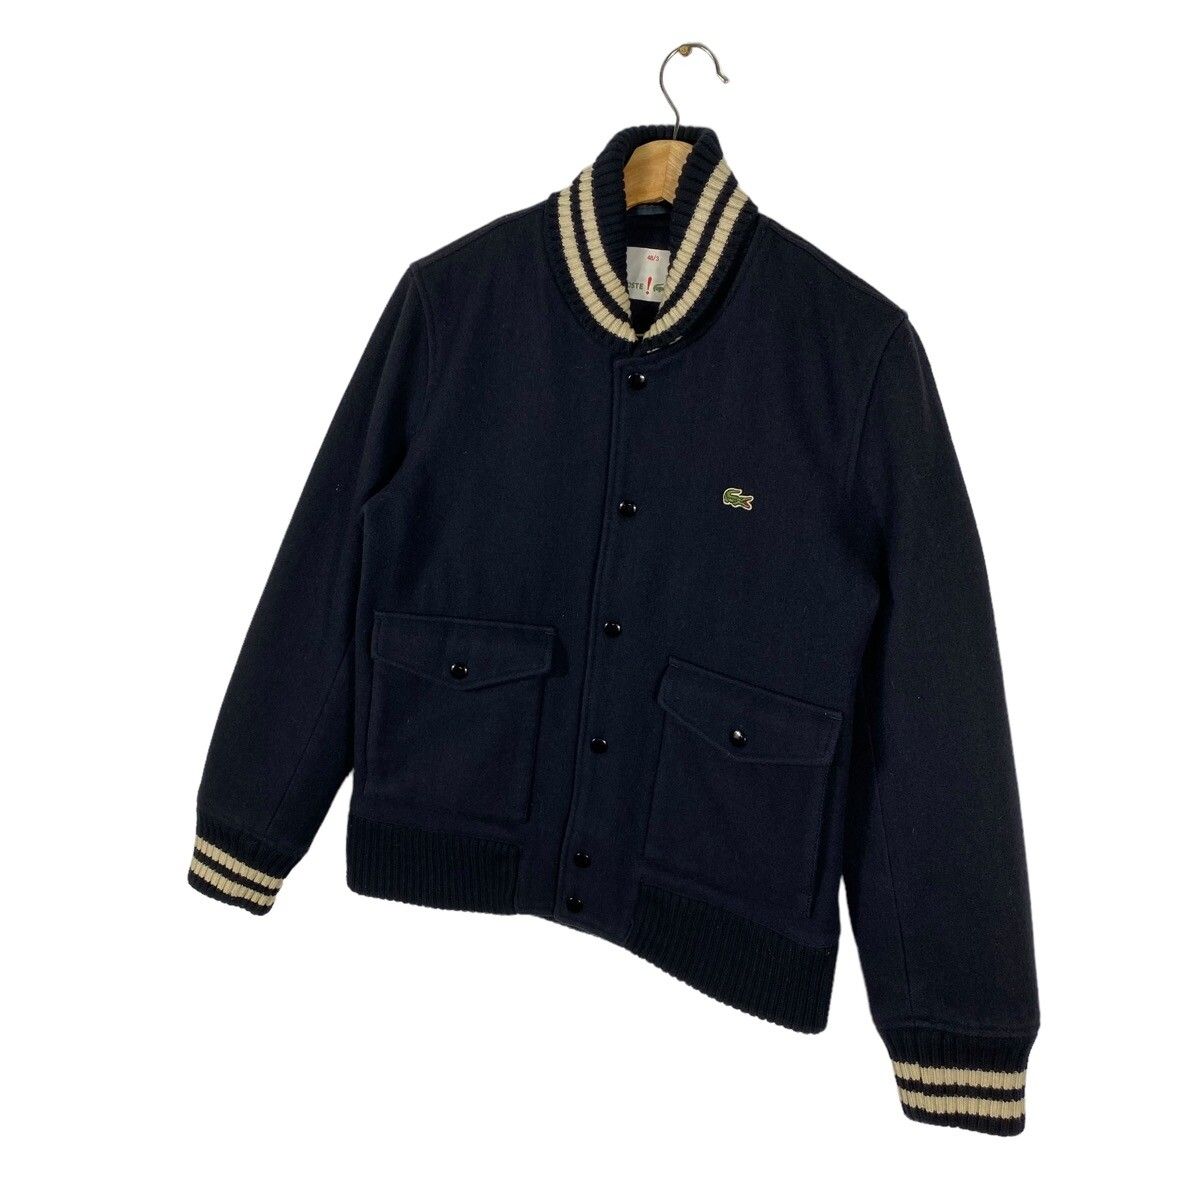 Vintage Lacoste Varsity Bomber Wool Jacket Size 48/3 (M) - 3